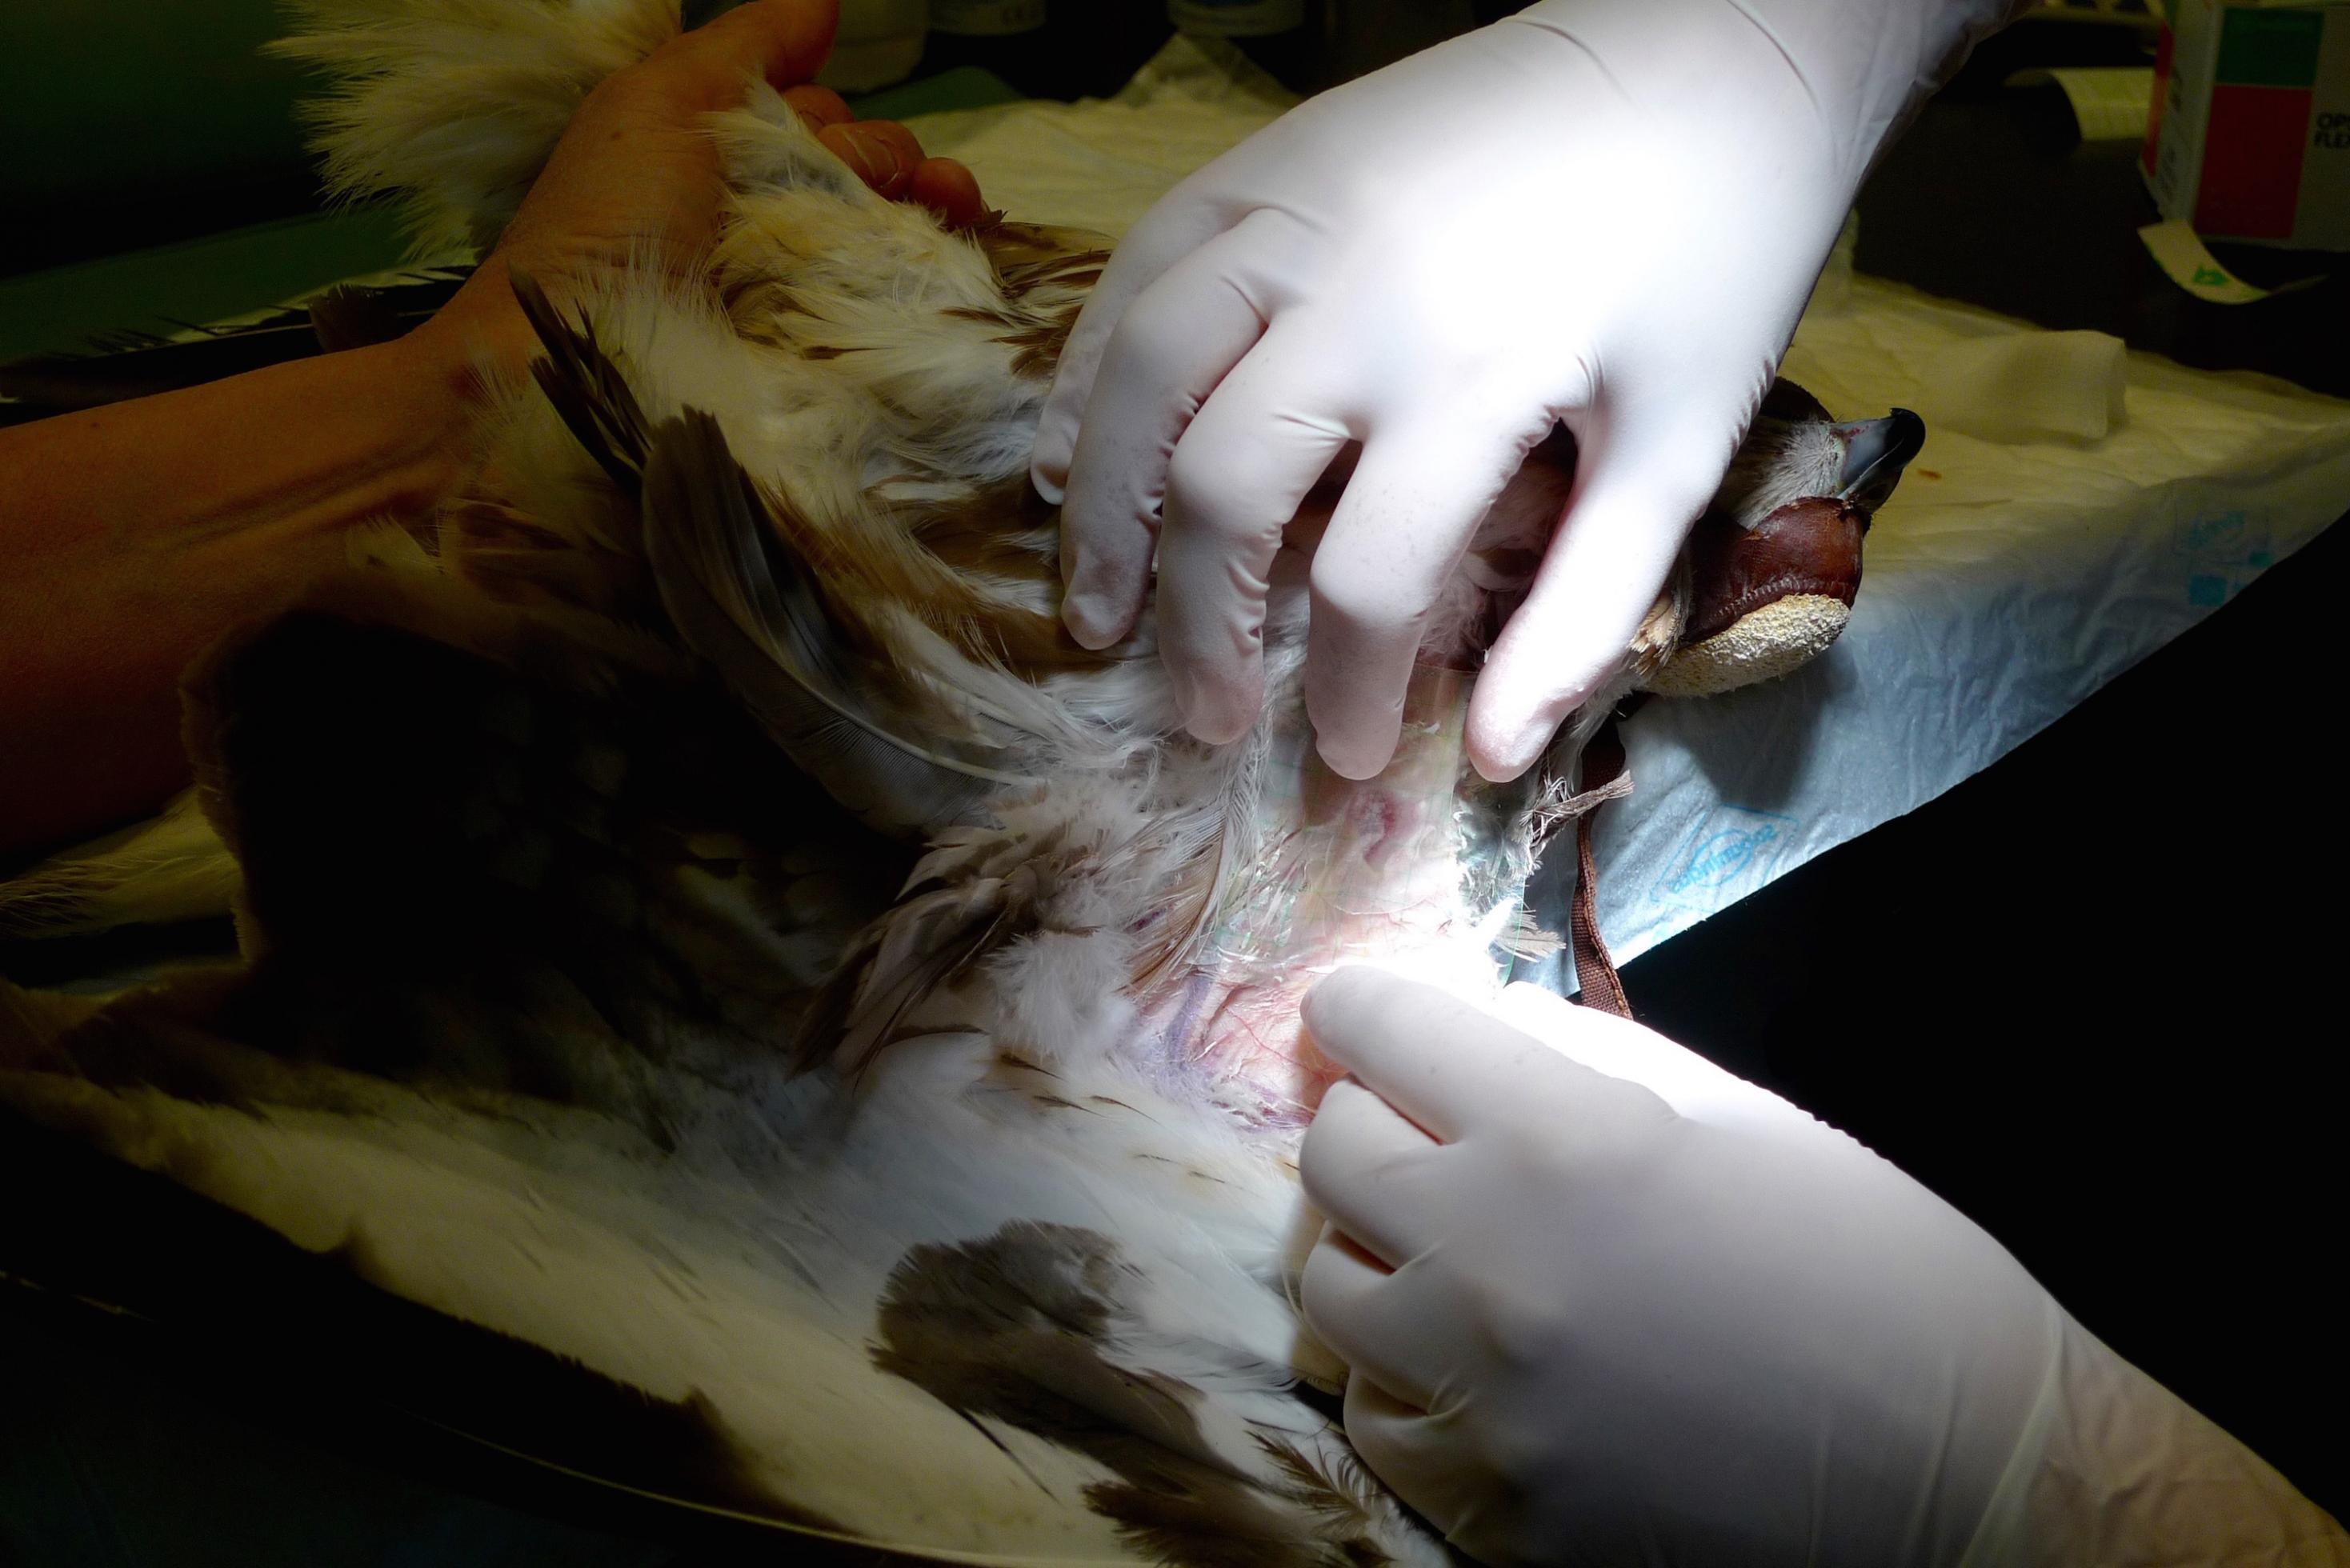 Ein Mäusebussard liegt auf dem Behandlungstisch. Eine Wunde unter seinem linken Flügel wird desinfiziert.